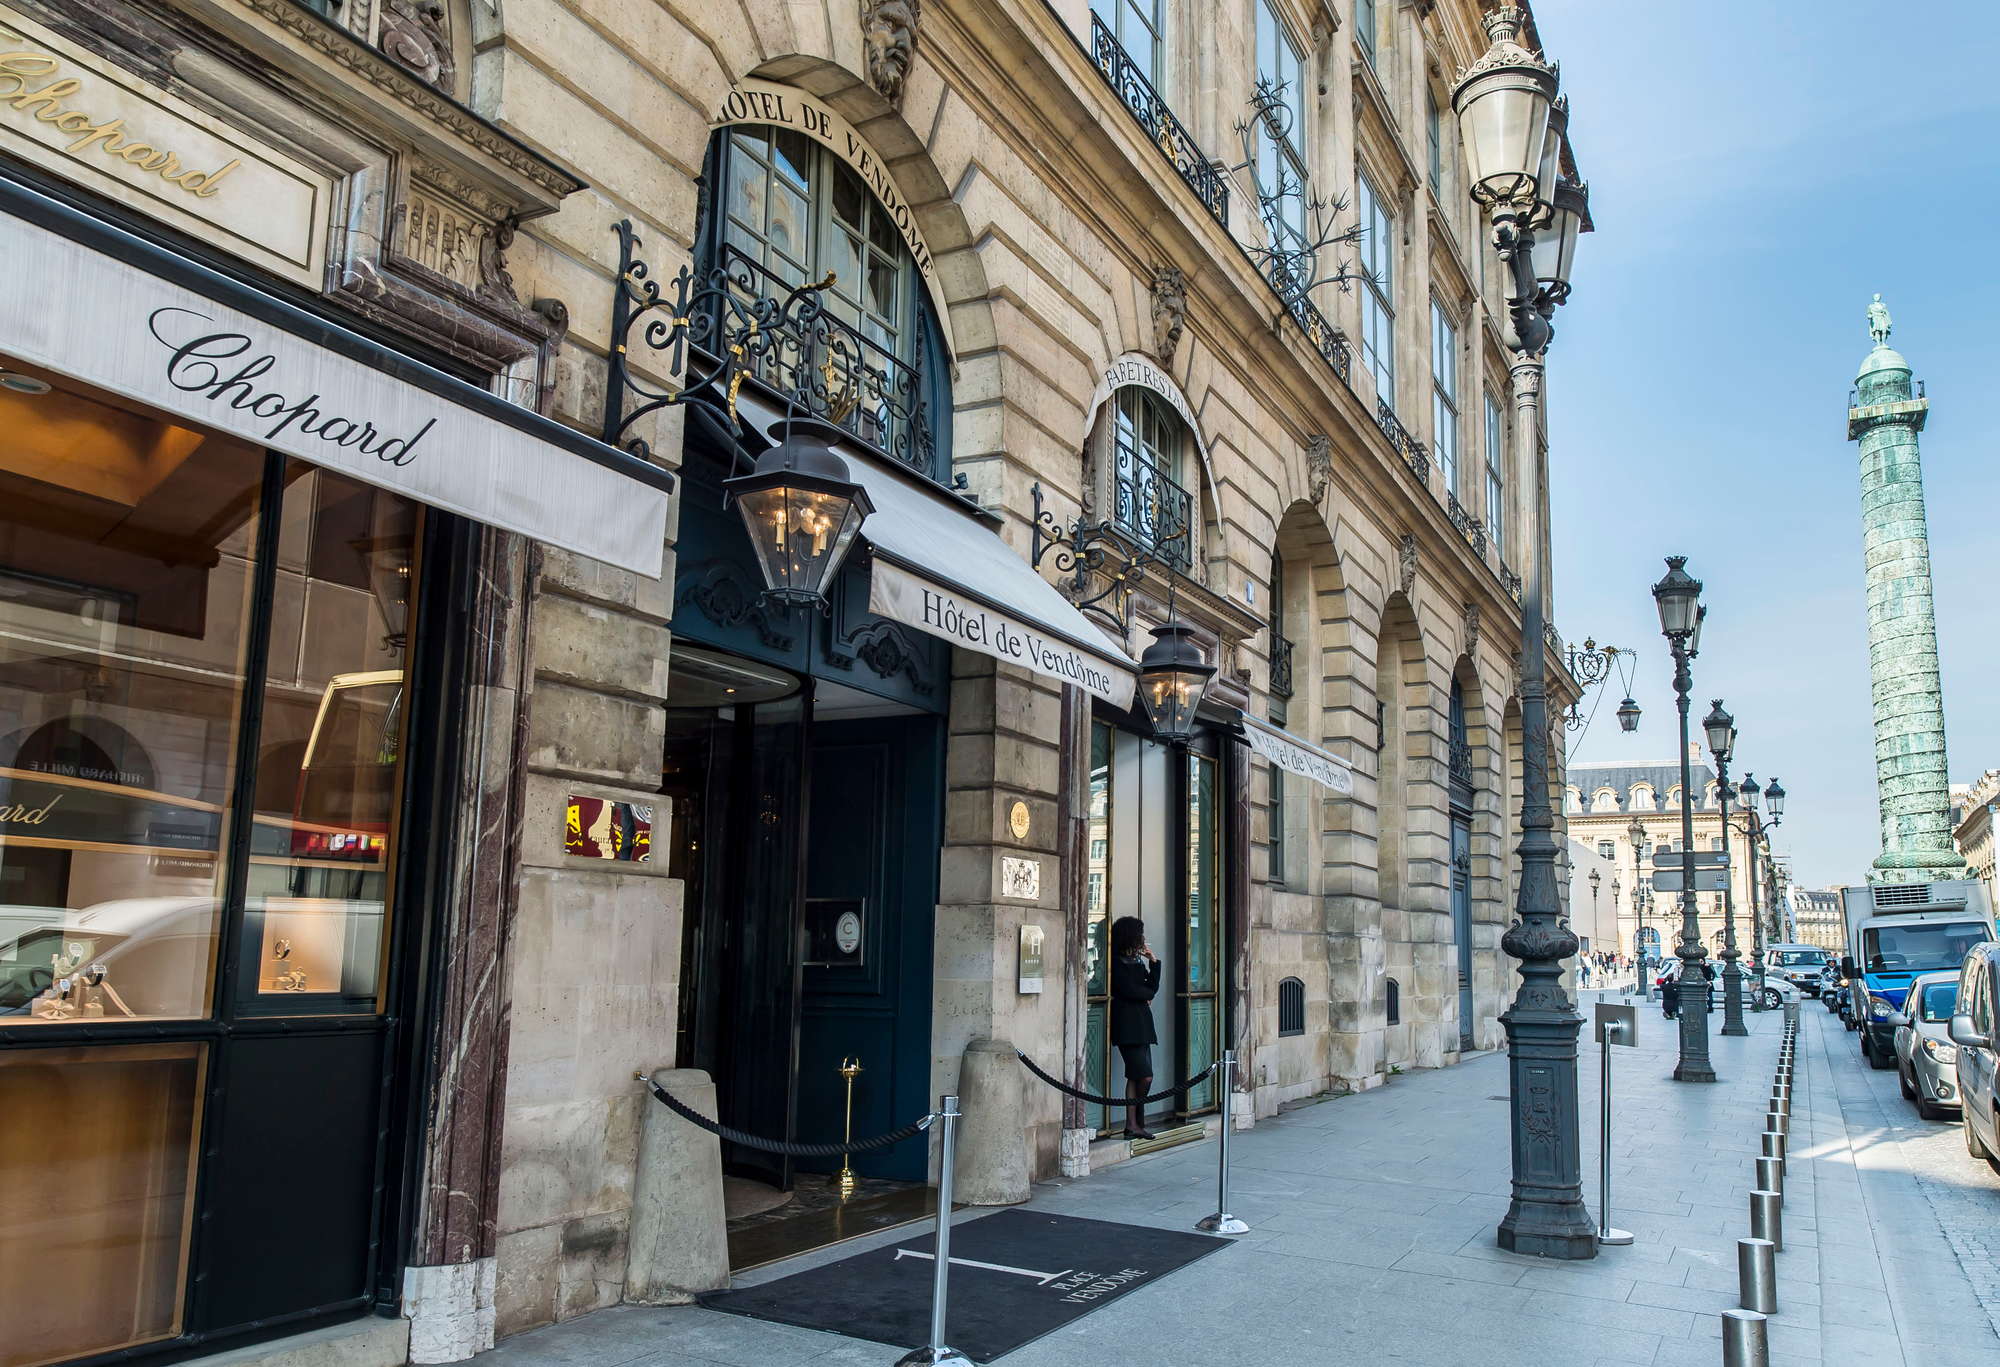 Louis Vuitton Maison Vendôme - From Rue de Castiglione, France